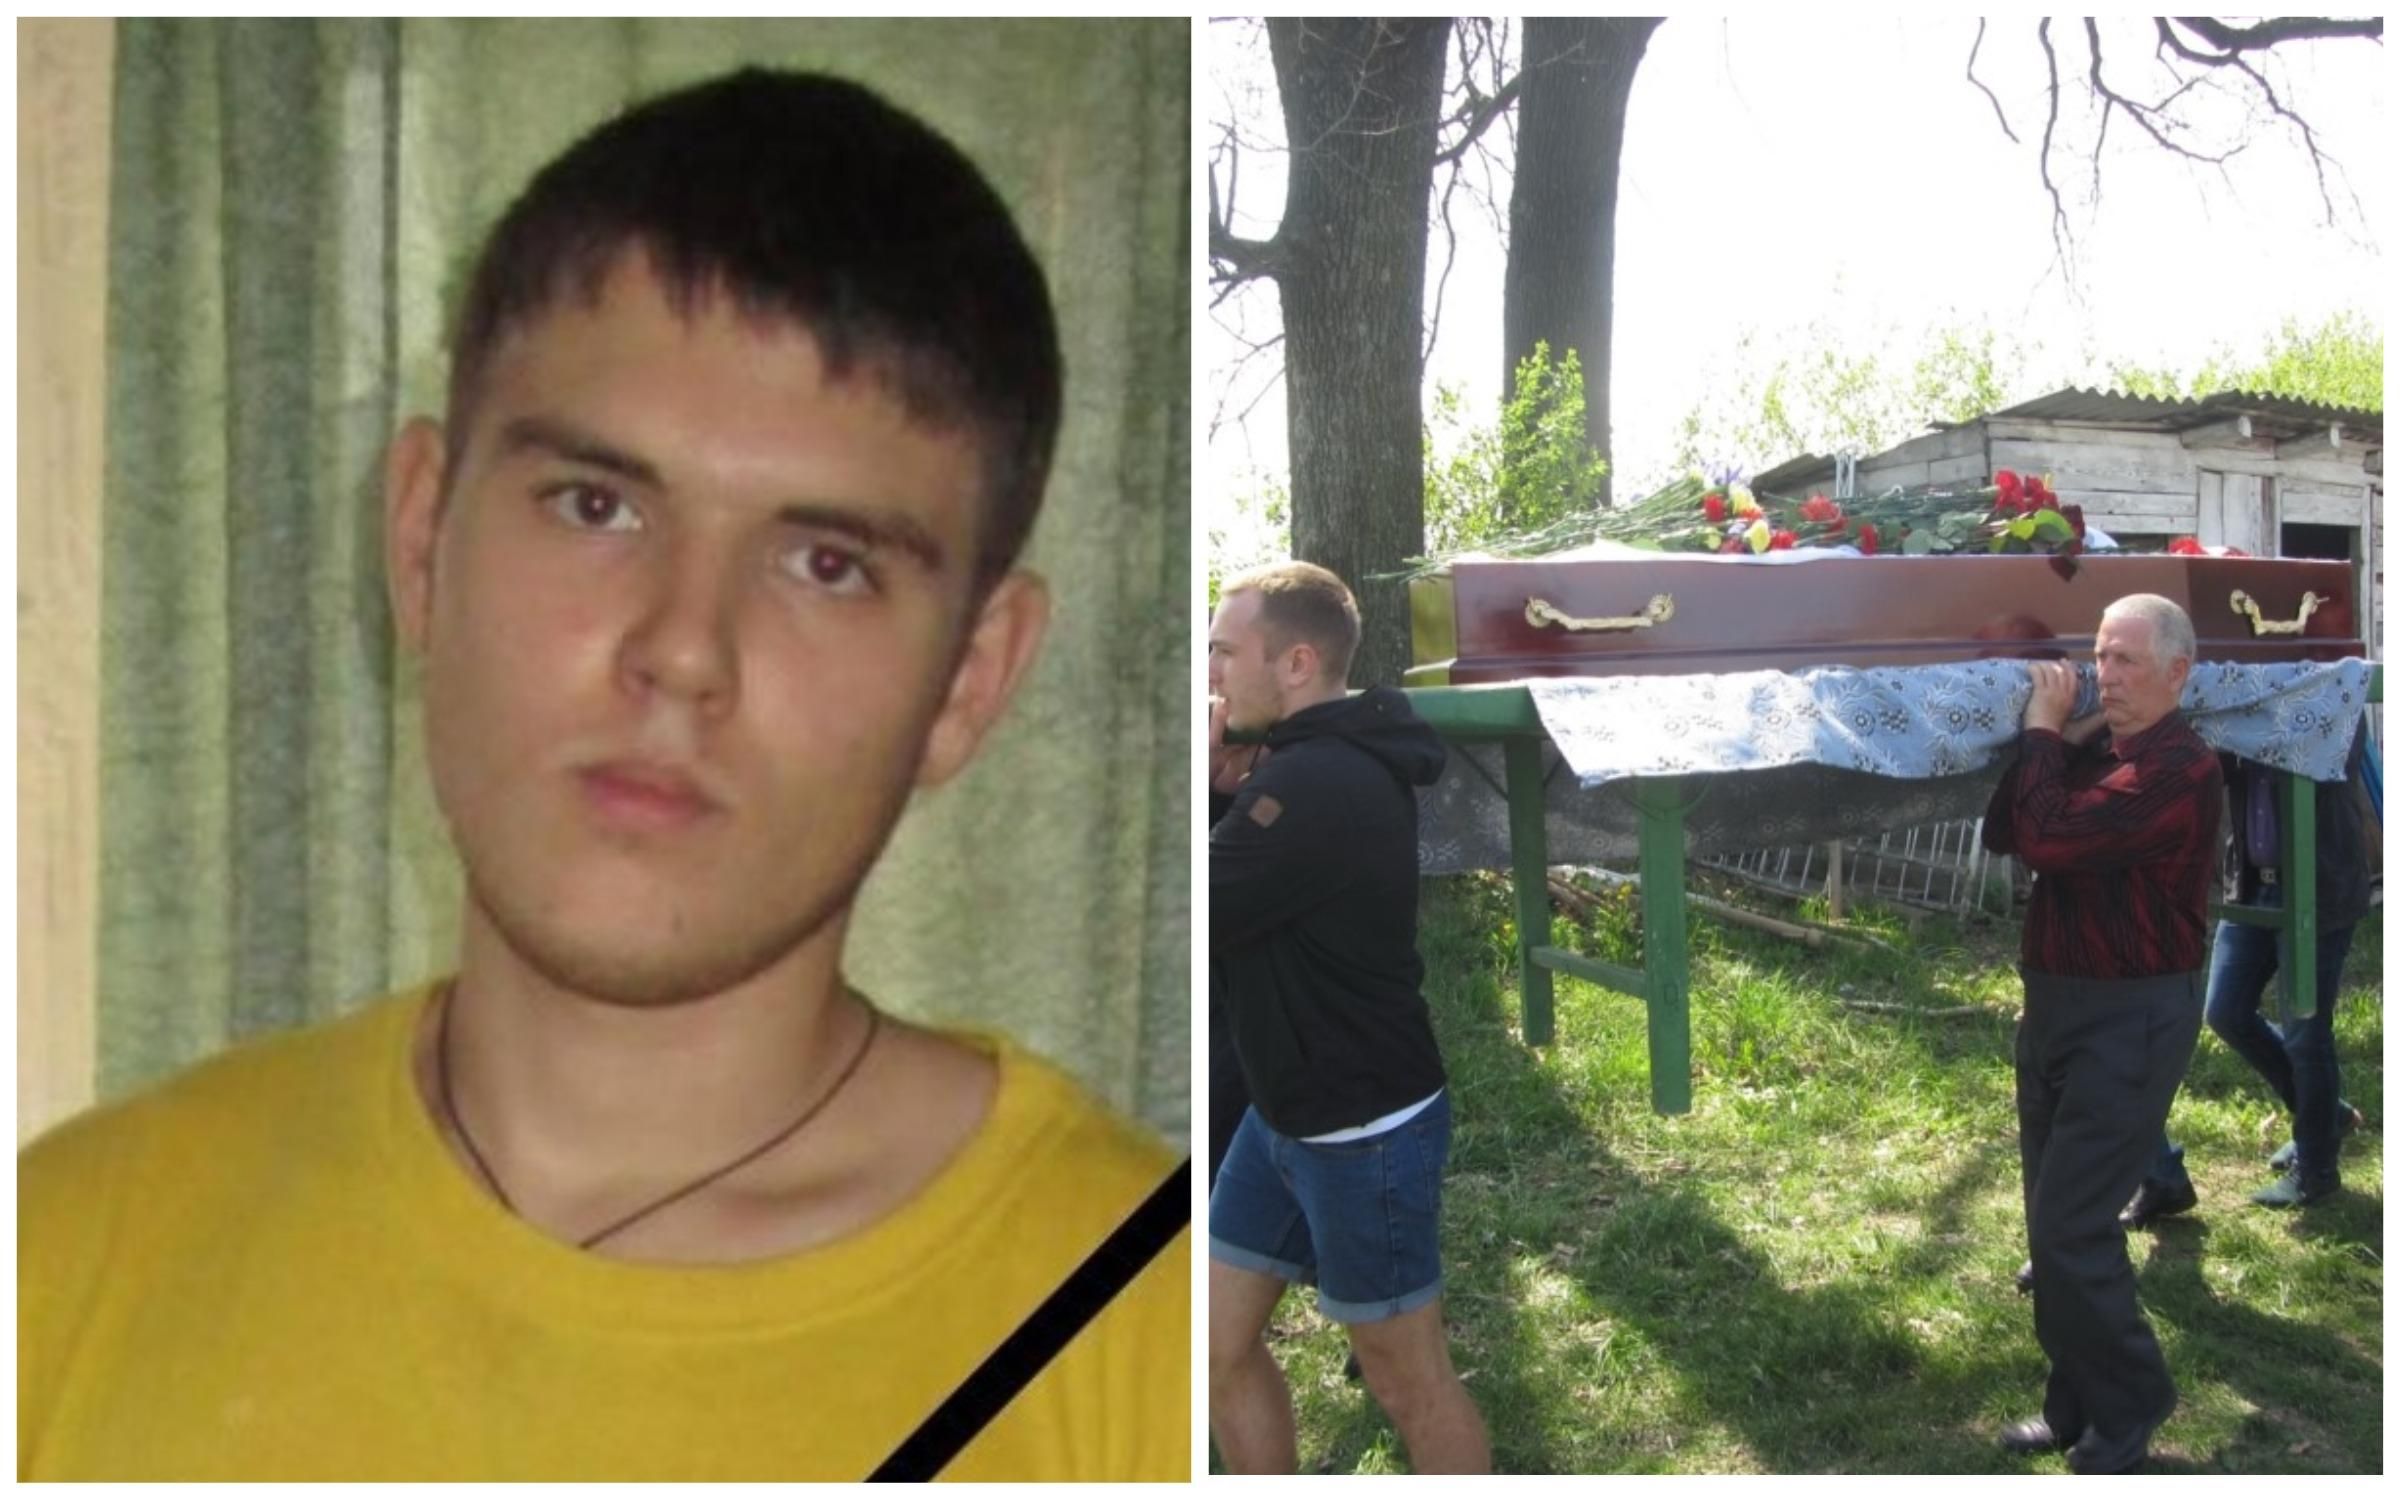 Звери так не ведут себя, – мать замученного украинца о преступлениях Гиркина на Донбассе